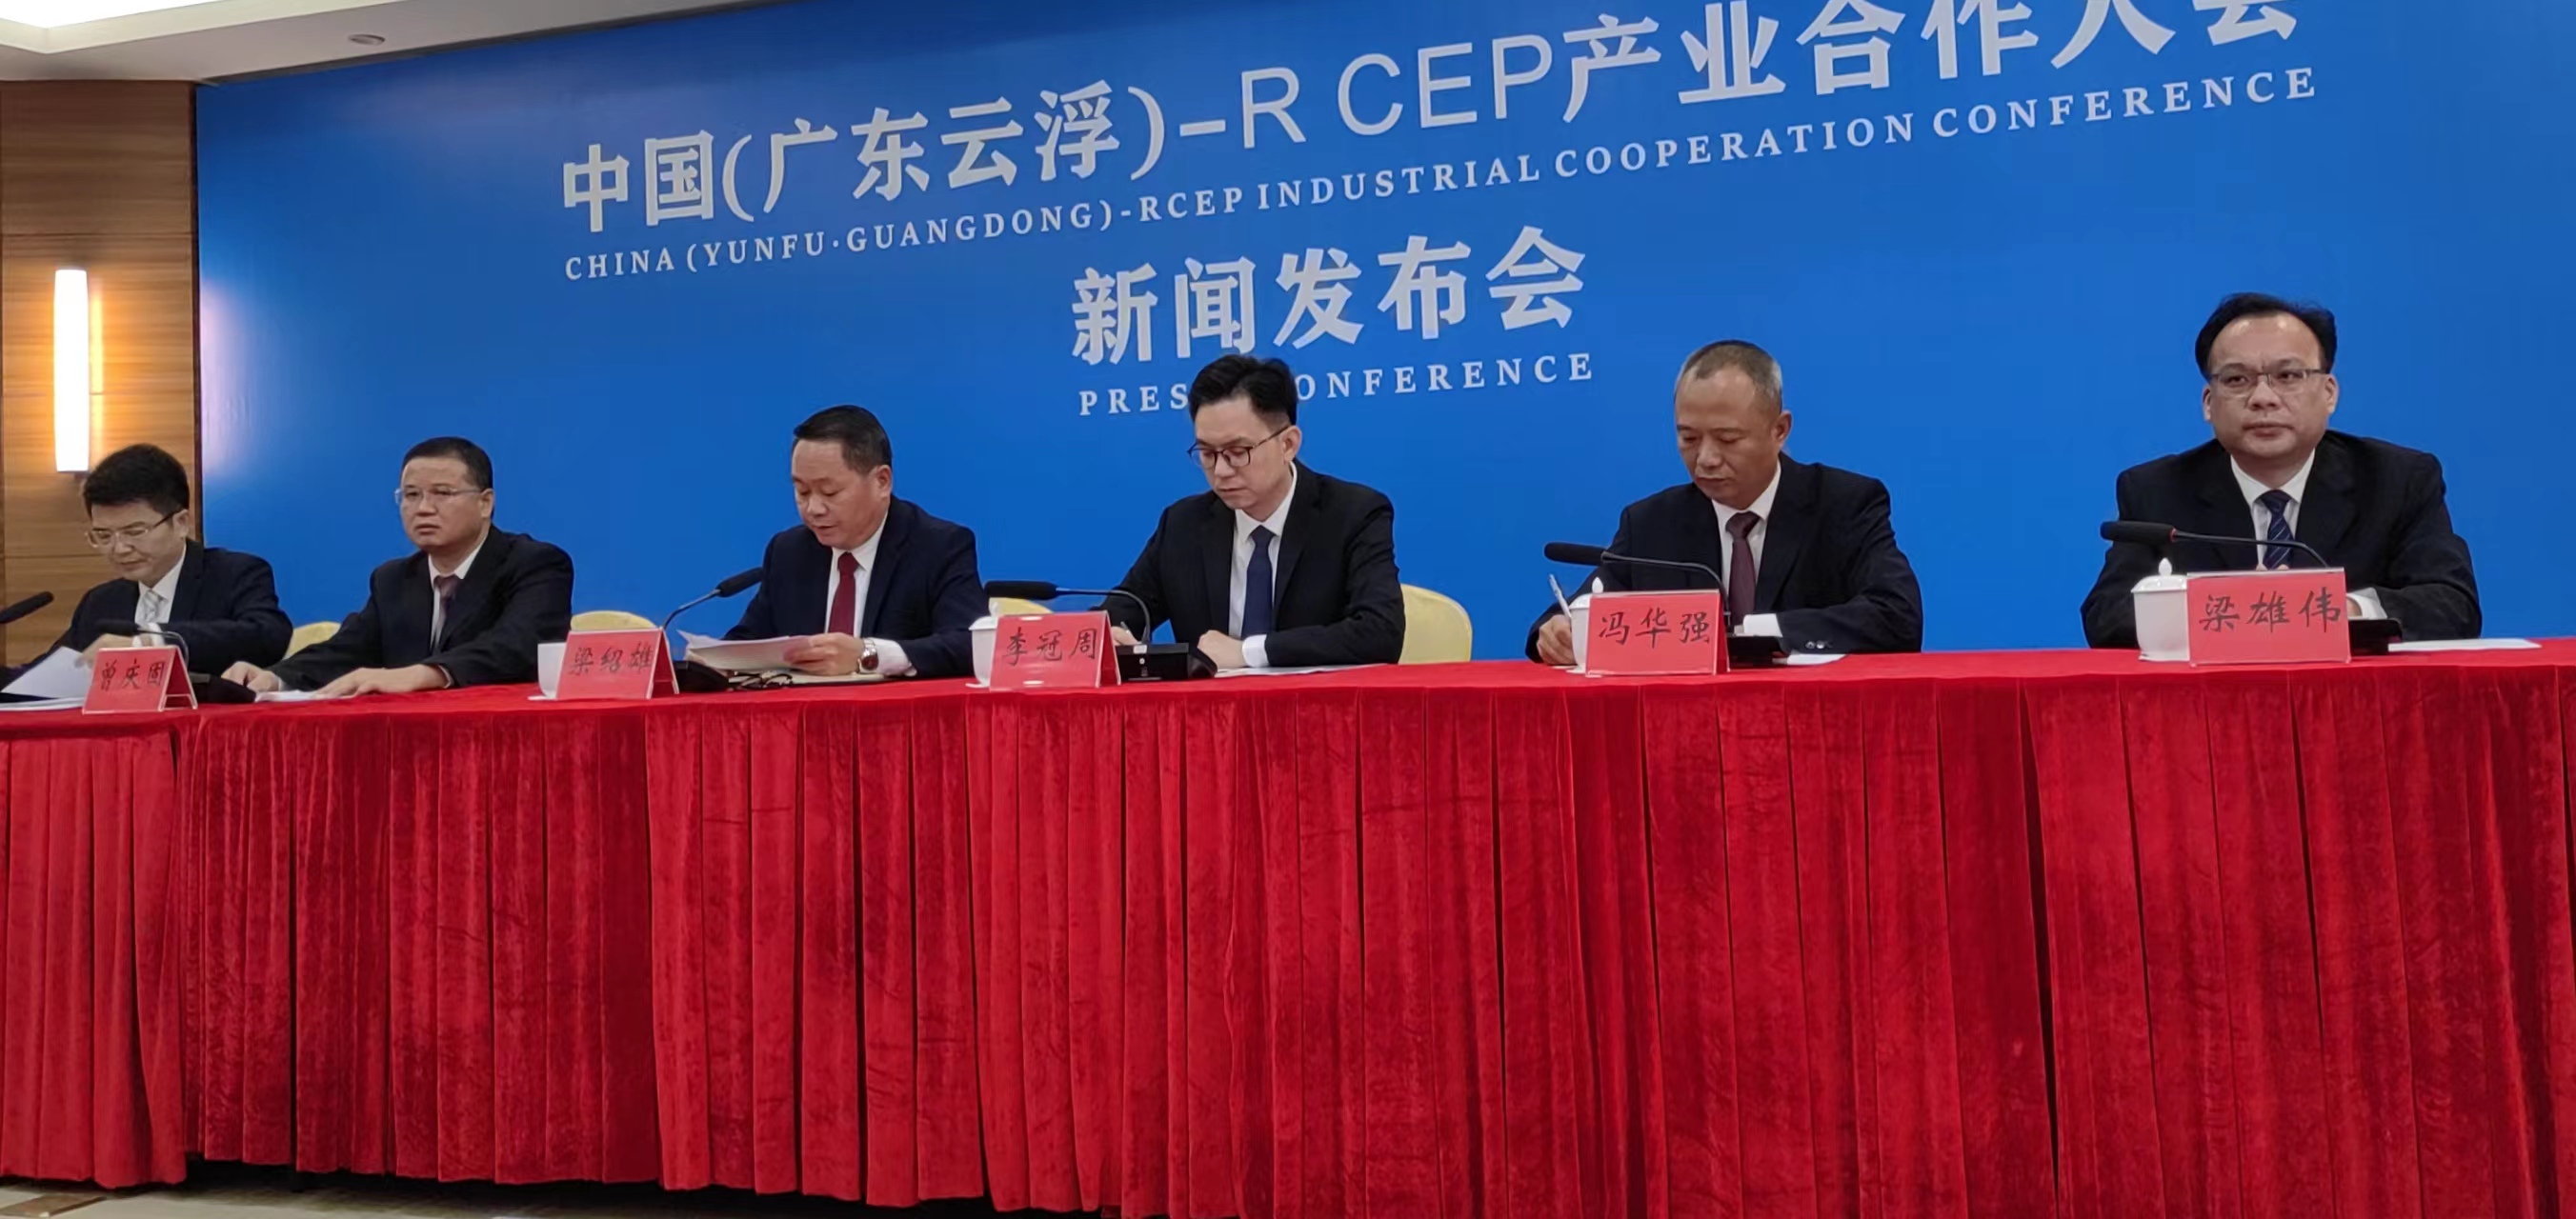 融入RCEP新賽道 拓展雲浮發展新空間  中國（廣東雲浮）—RCEP產業合作大會11月8日開幕